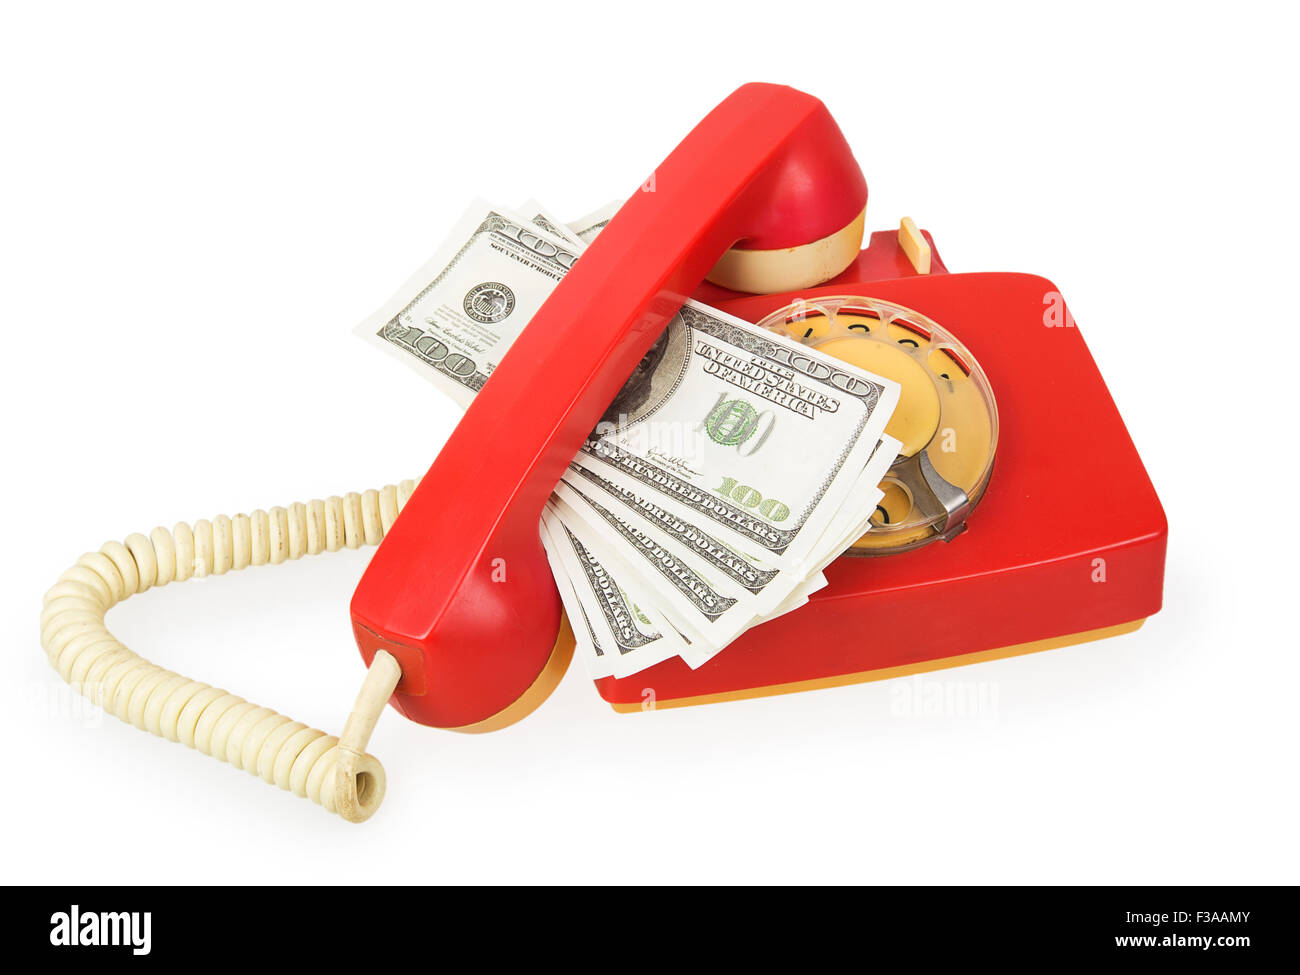 Легко деньги телефон. Красный телефон как там с деньгами.